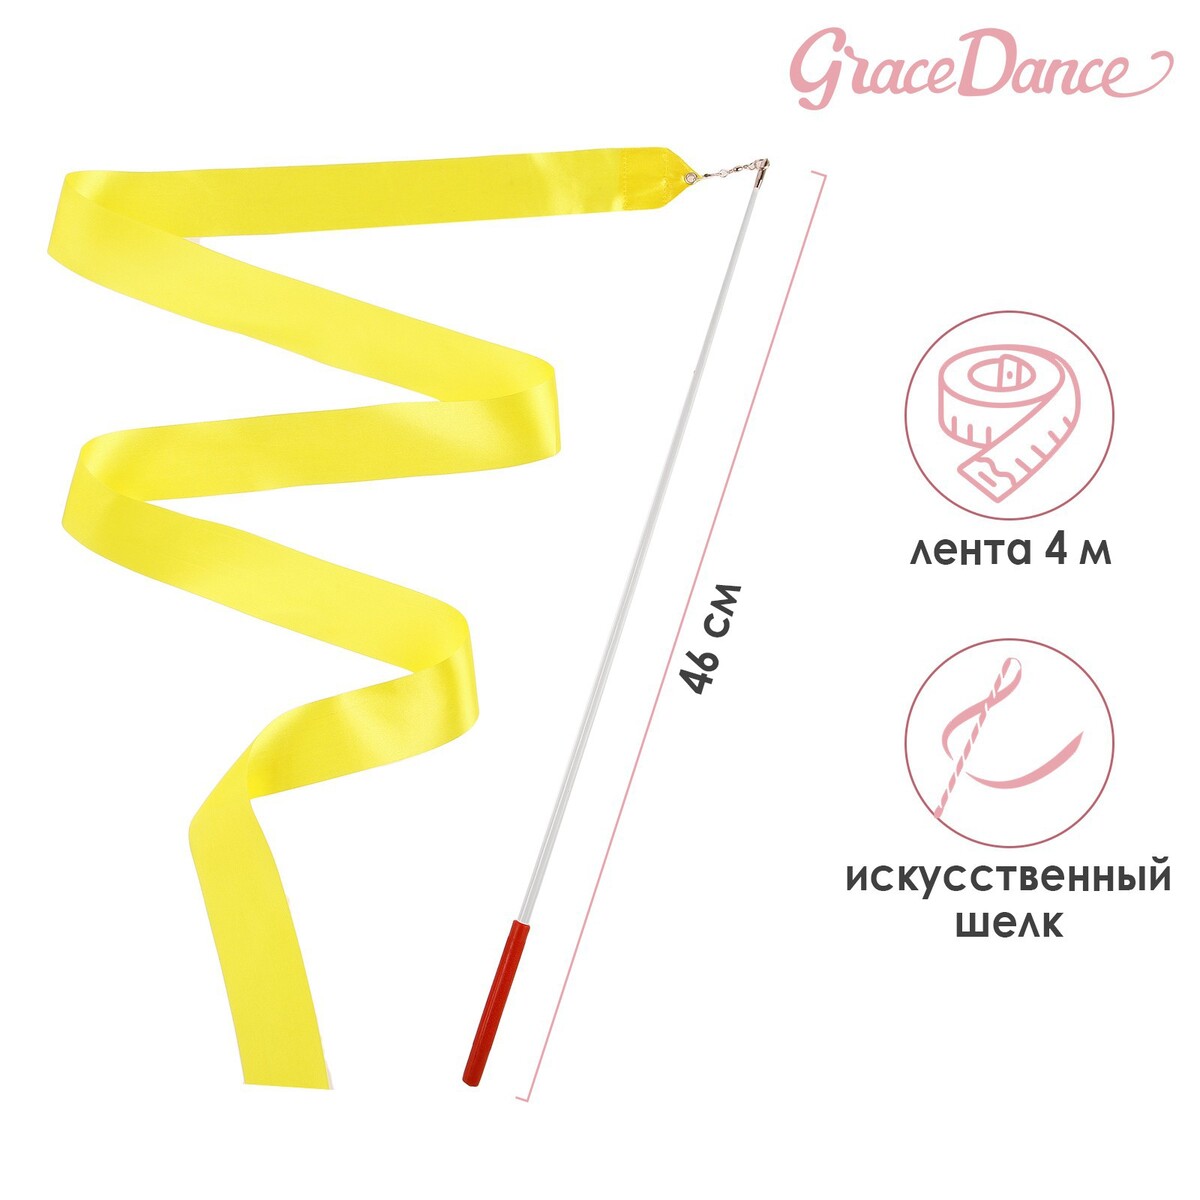 Лента для художественной гимнастики с палочкой grace dance, 4 м, цвет желтый лента гимнастическая с палочкой grace dance 6 м розовый